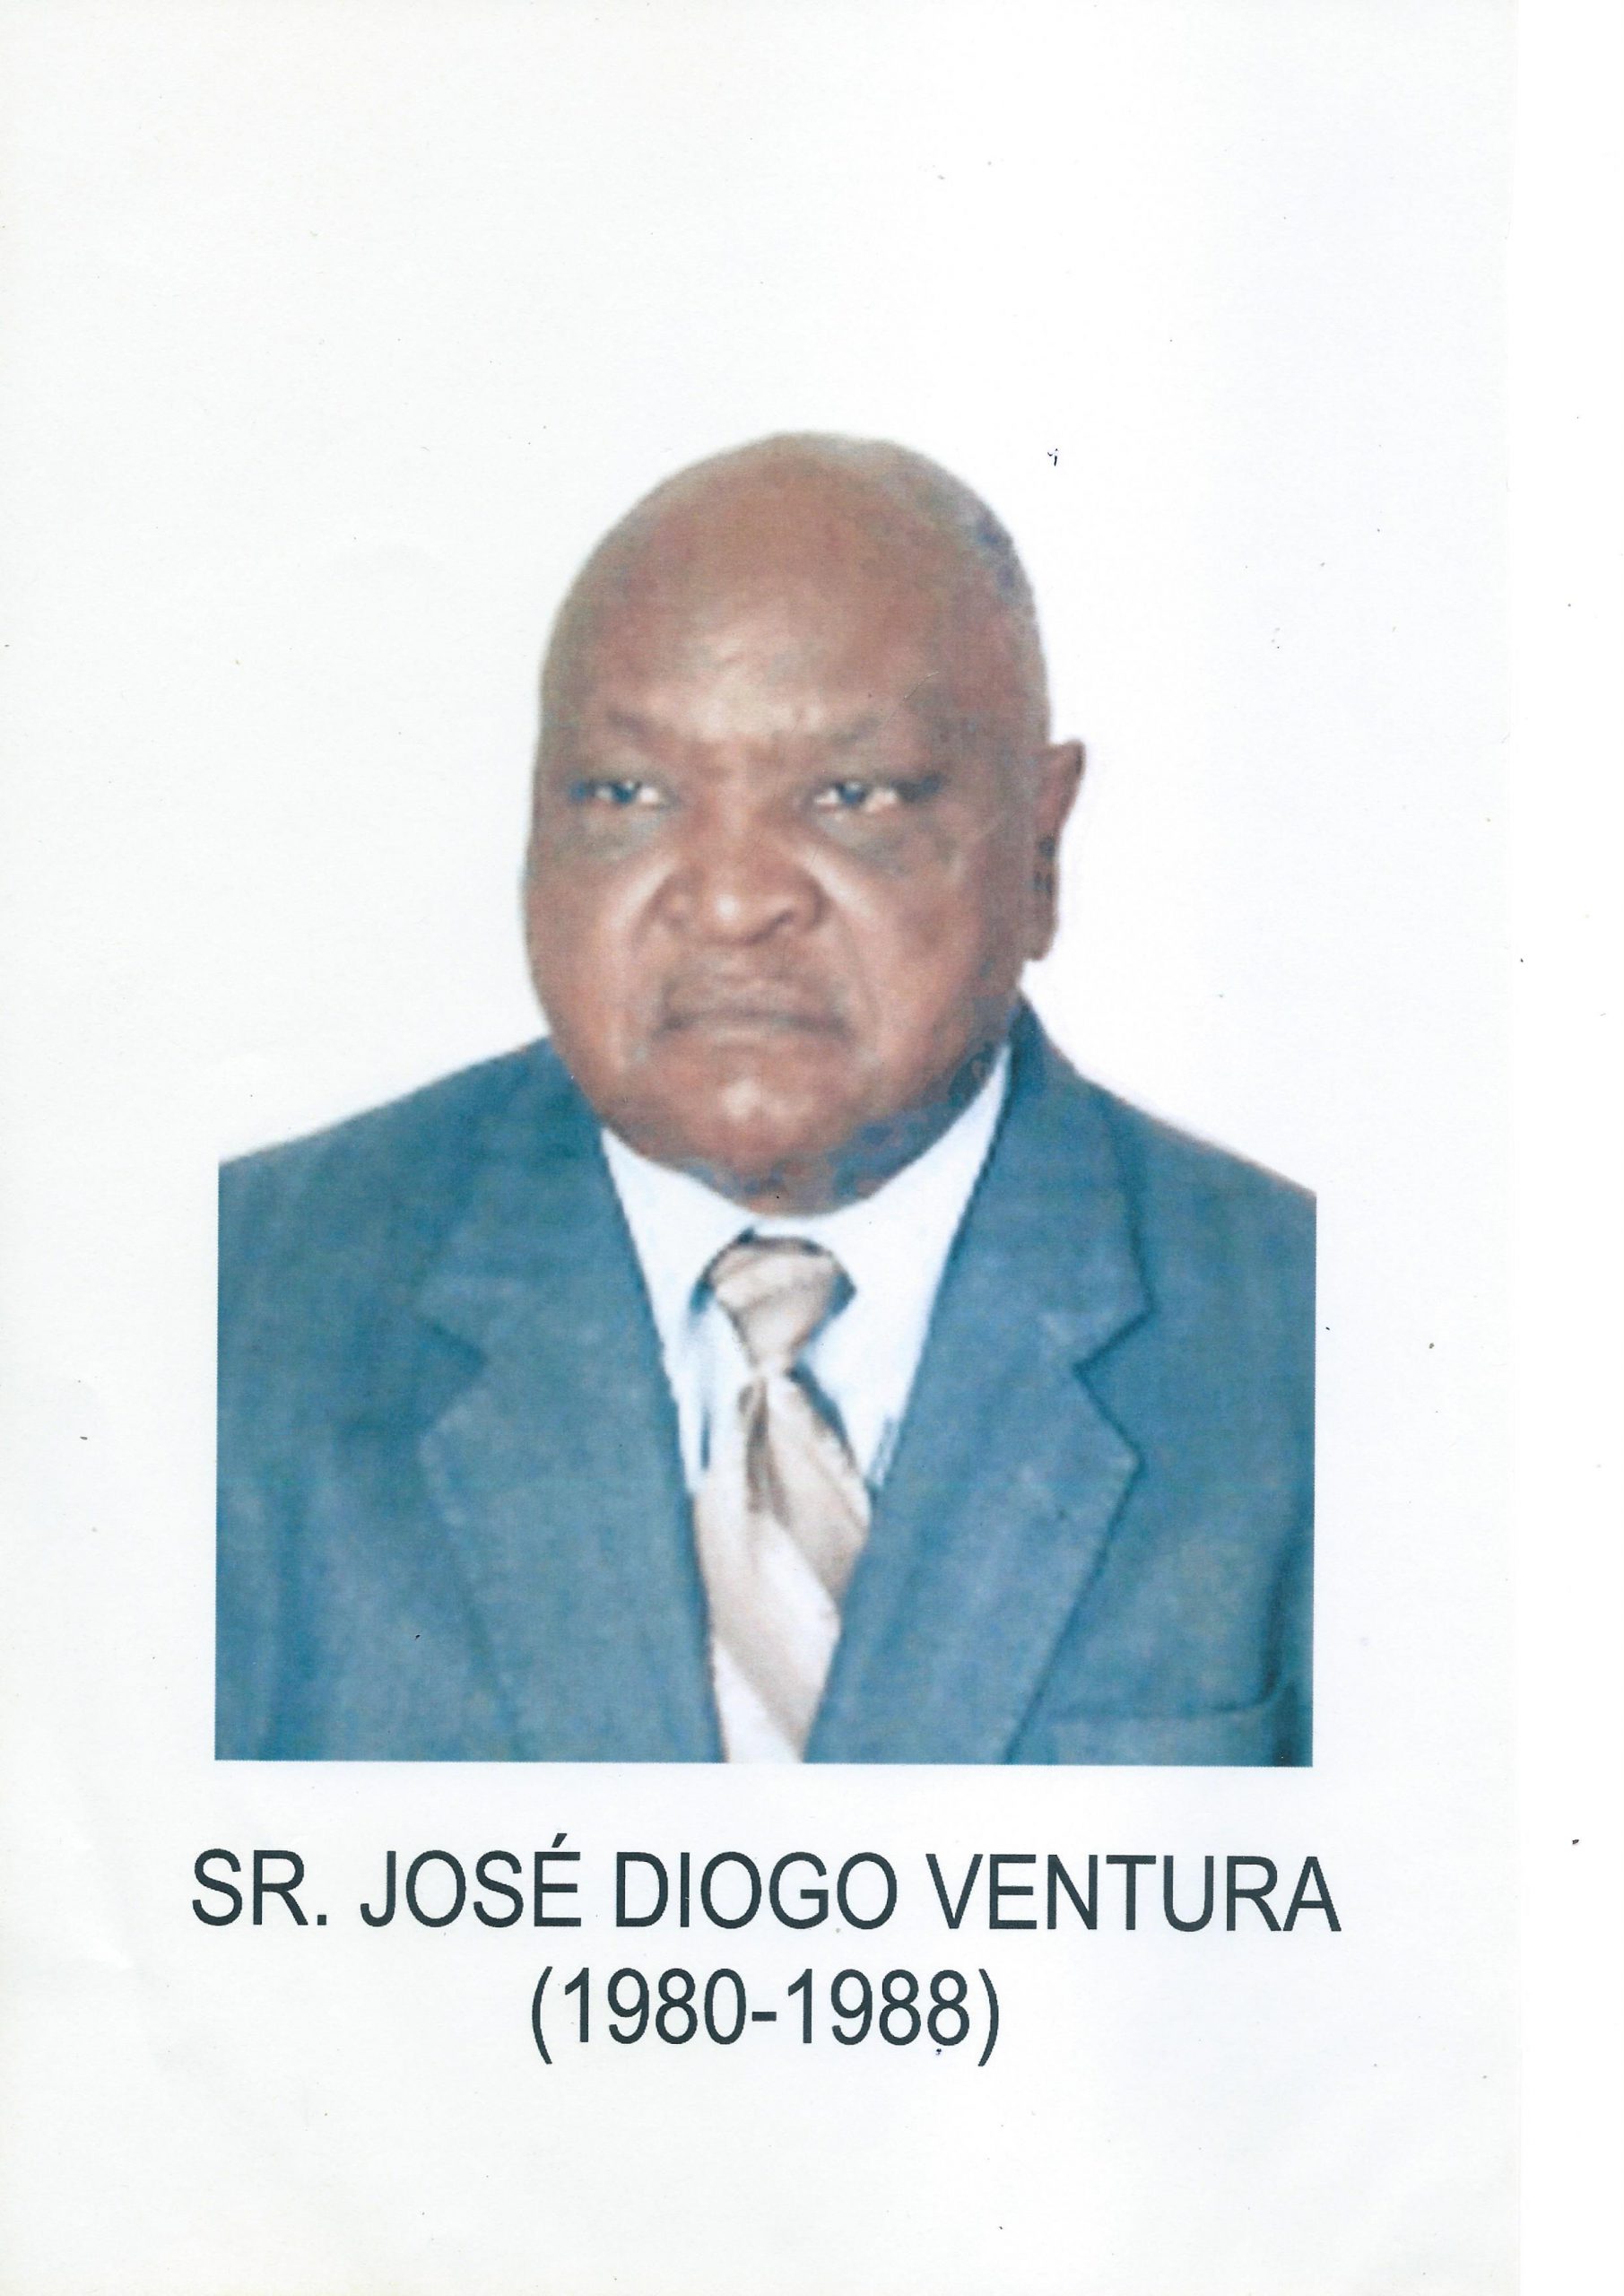 Sr. José Diogo Ventura 1980-1988